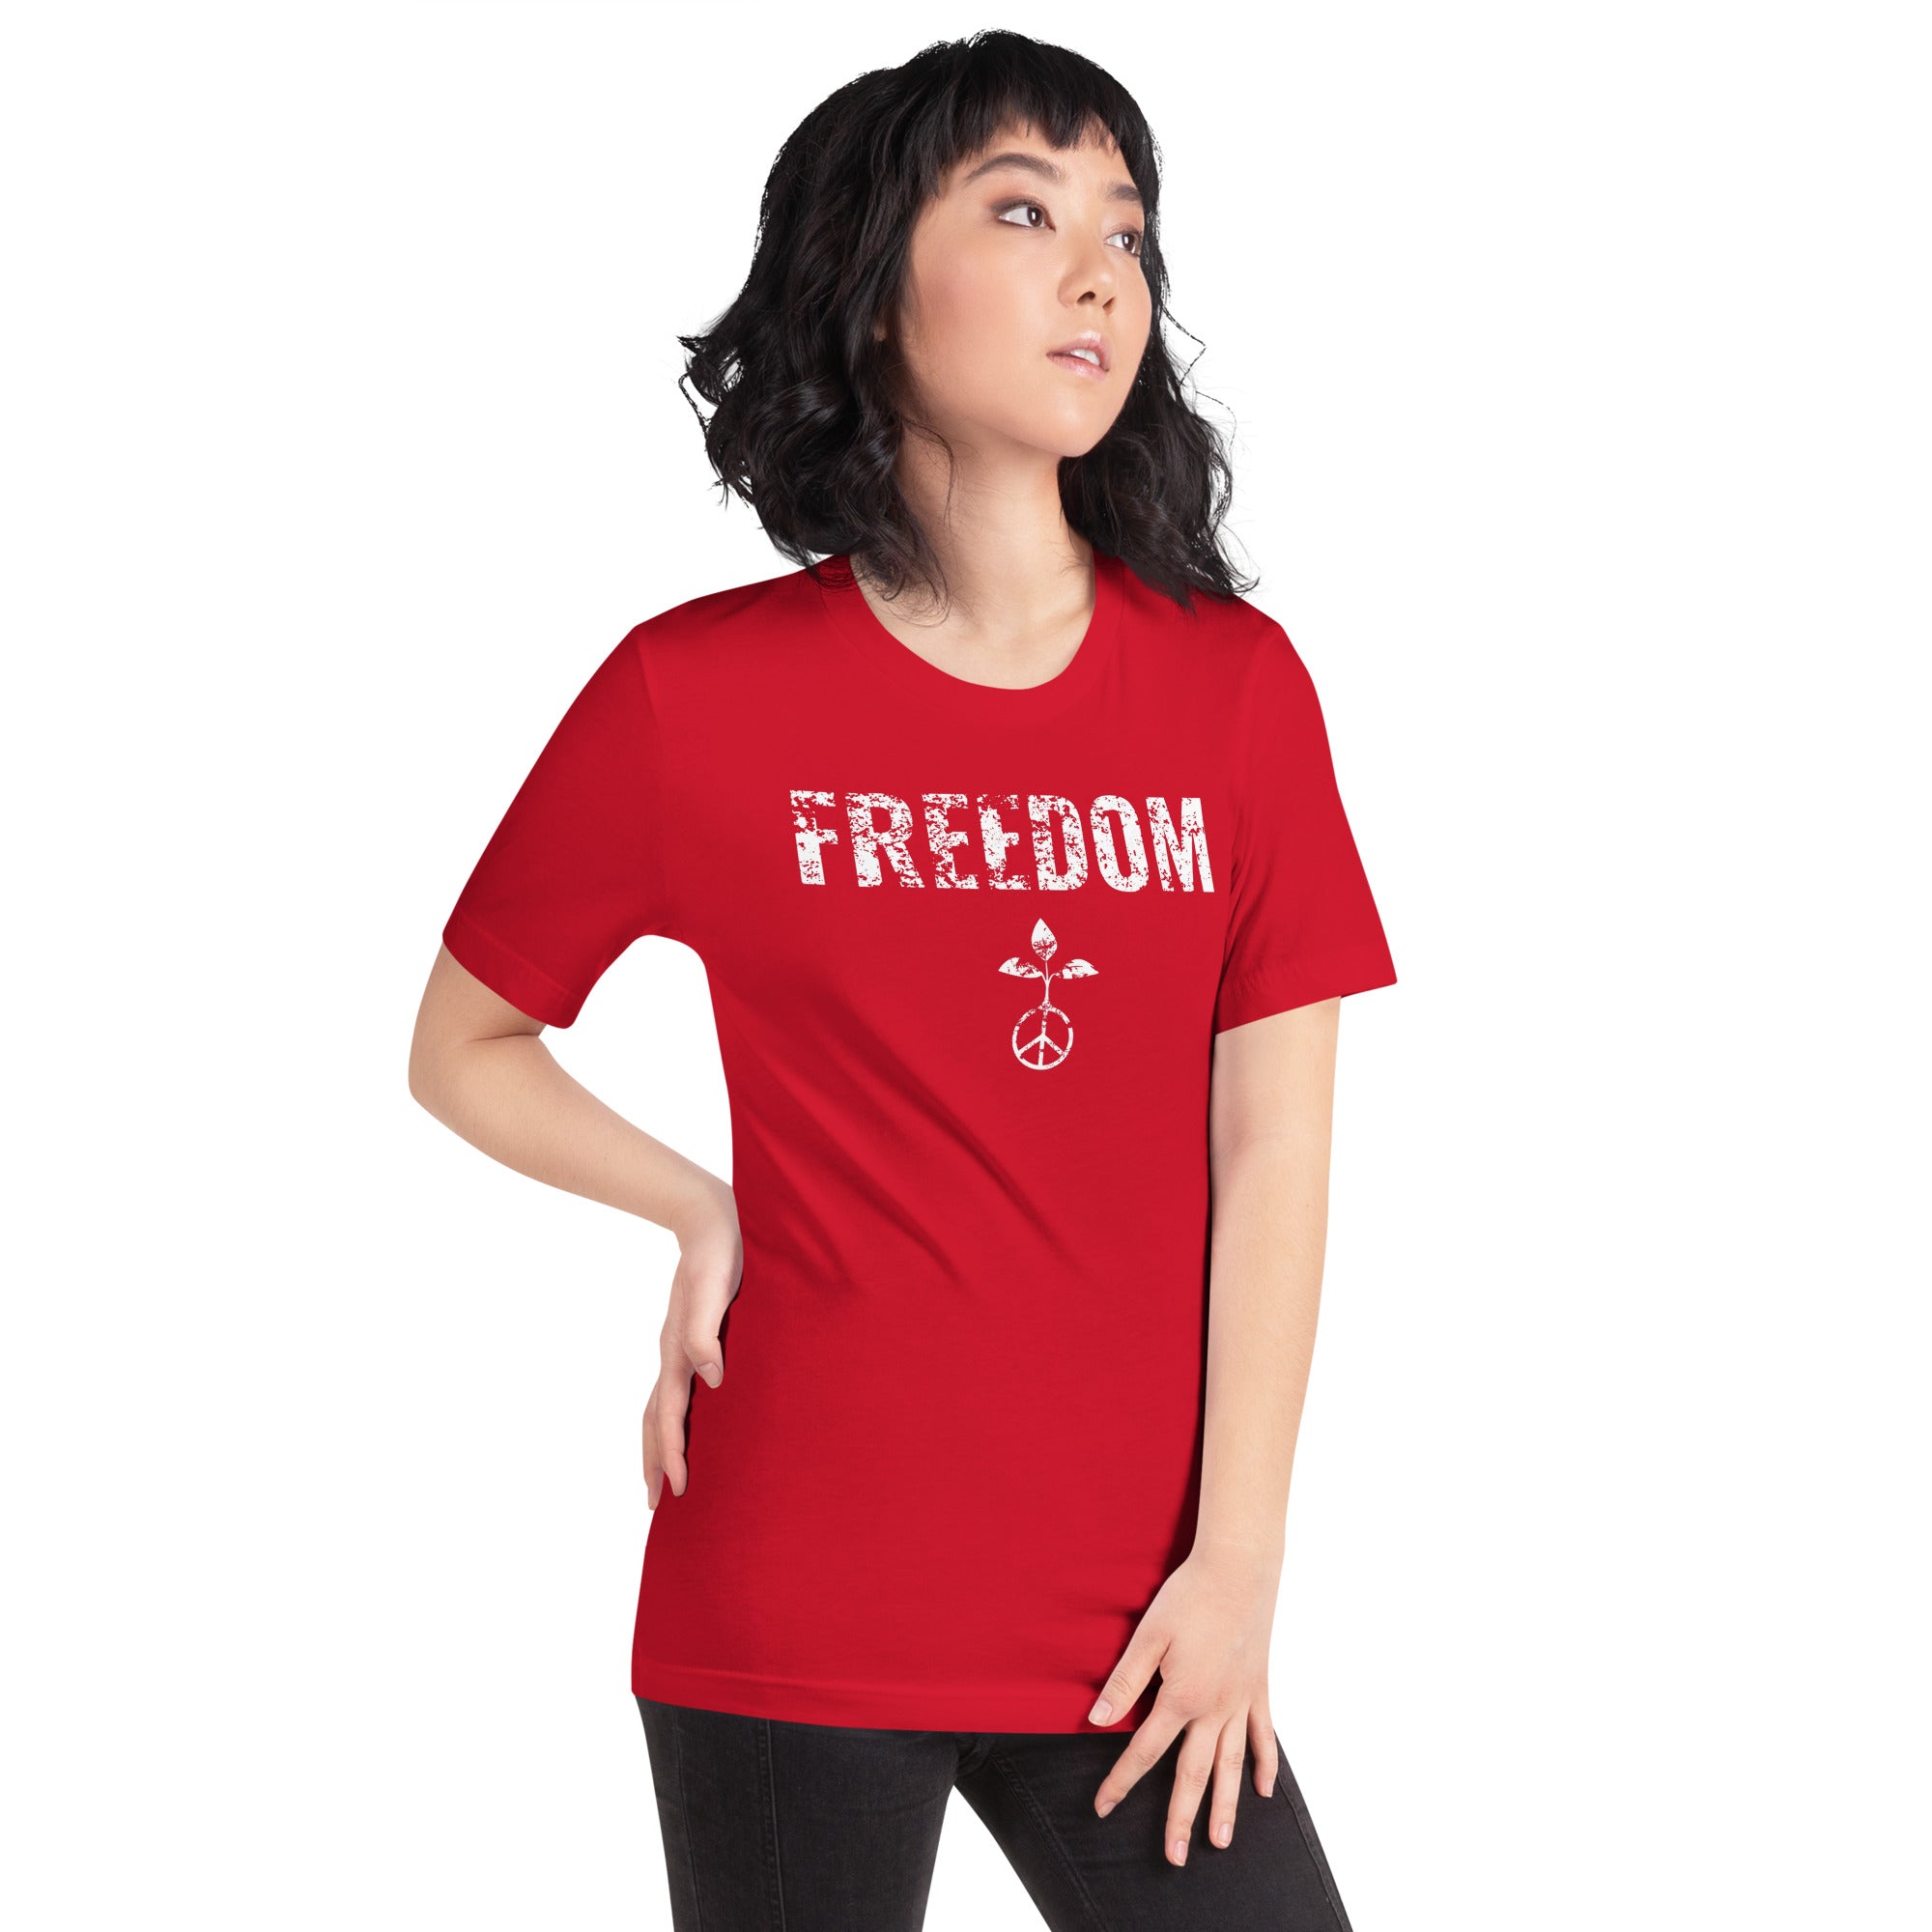 Freedom Unisex t-shirt